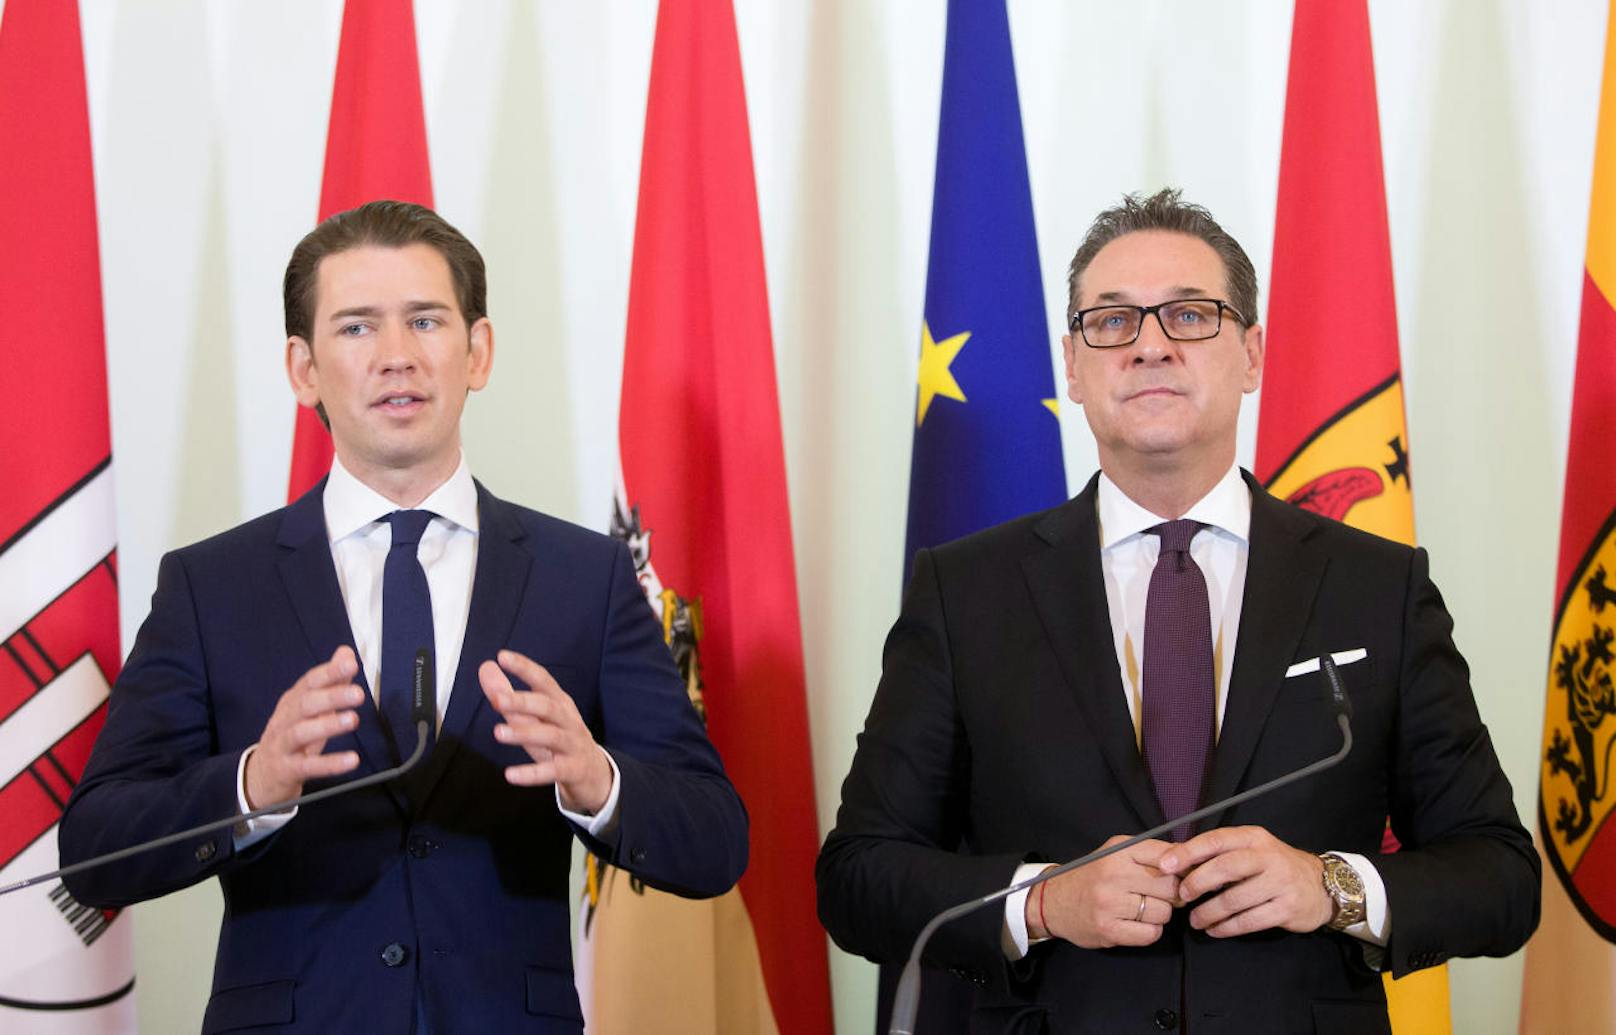 ÖVP und FPÖ haben in ihrem Regierungsprogramm festgeschrieben, eine "unabhängige und objektive Rechtsberatung und qualitativ hochwertige Rückkehrberatung" für Asylwerber zu schaffen.